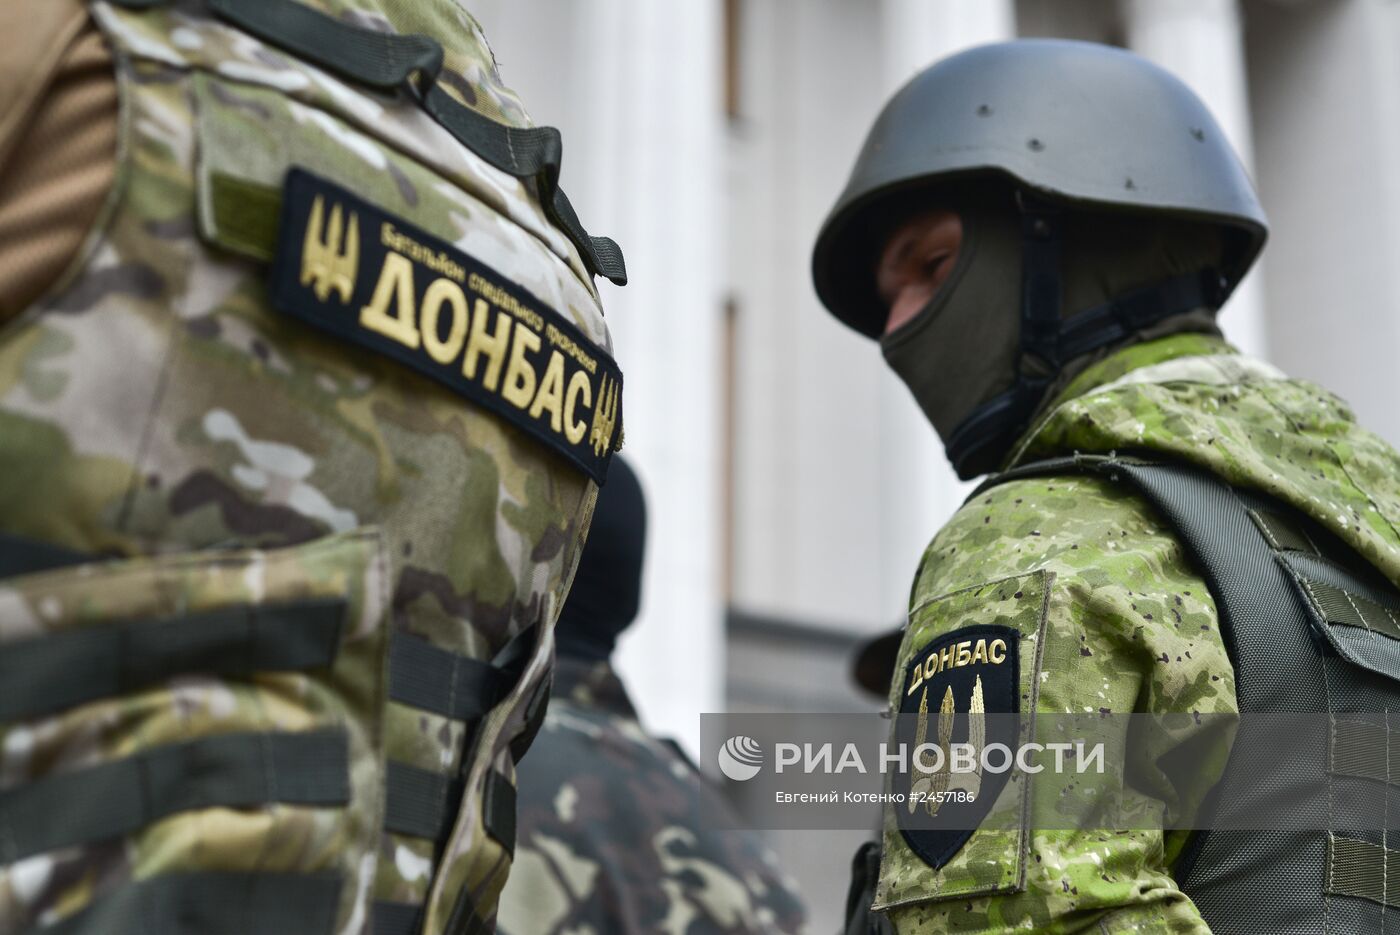 Усиление мер безопасности у Верховной Рады Украины в Киеве